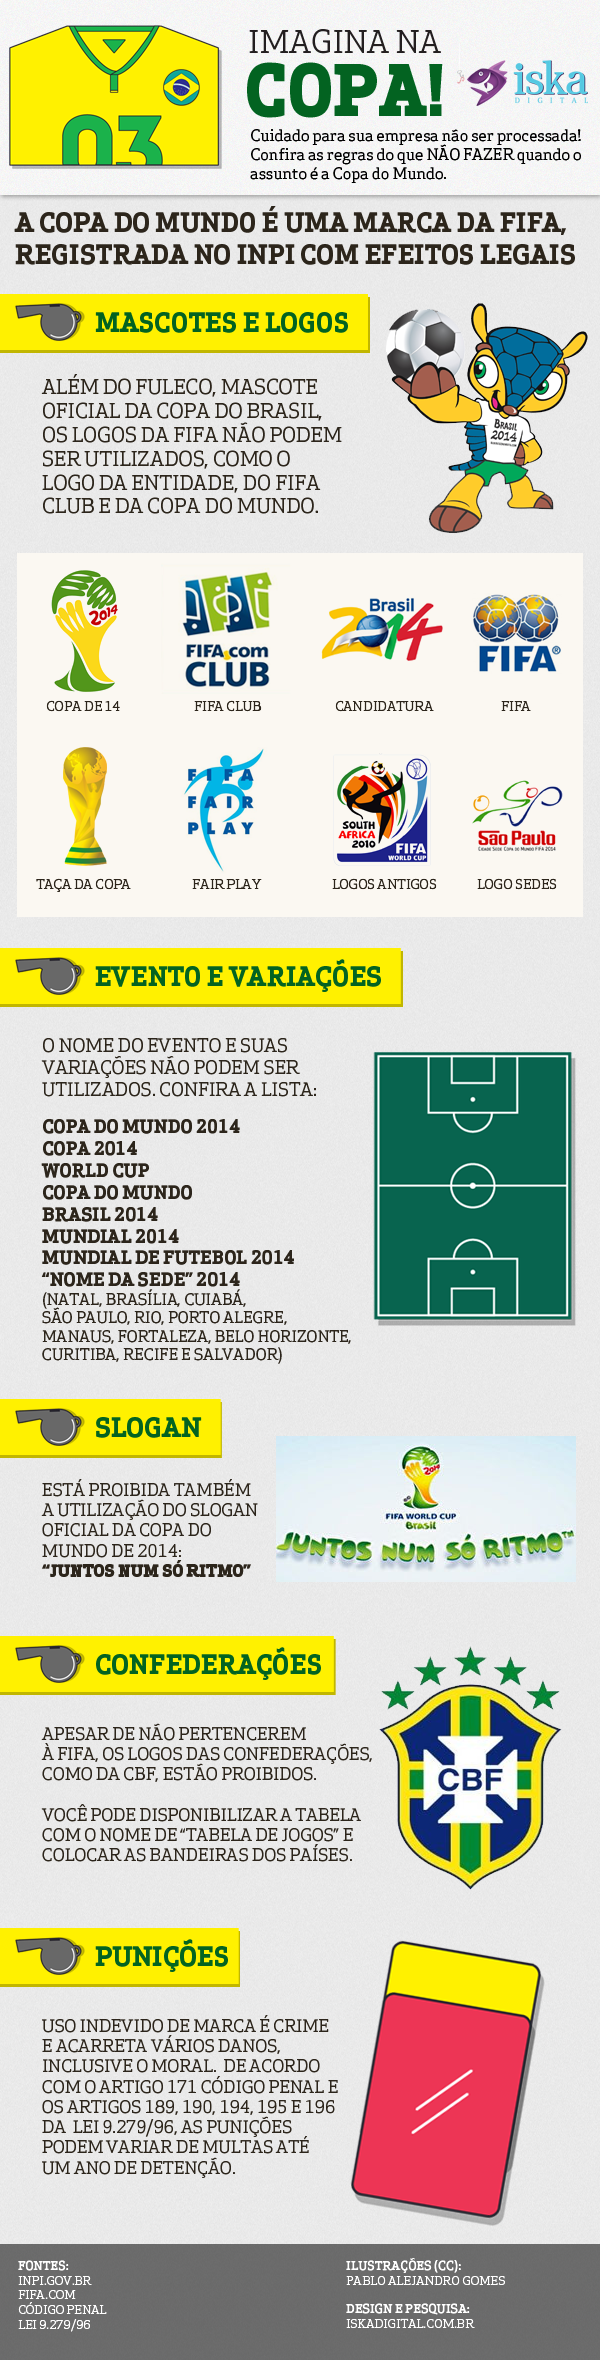 Infográfico o que sua marca não pode usar durante a Copa do Mundo